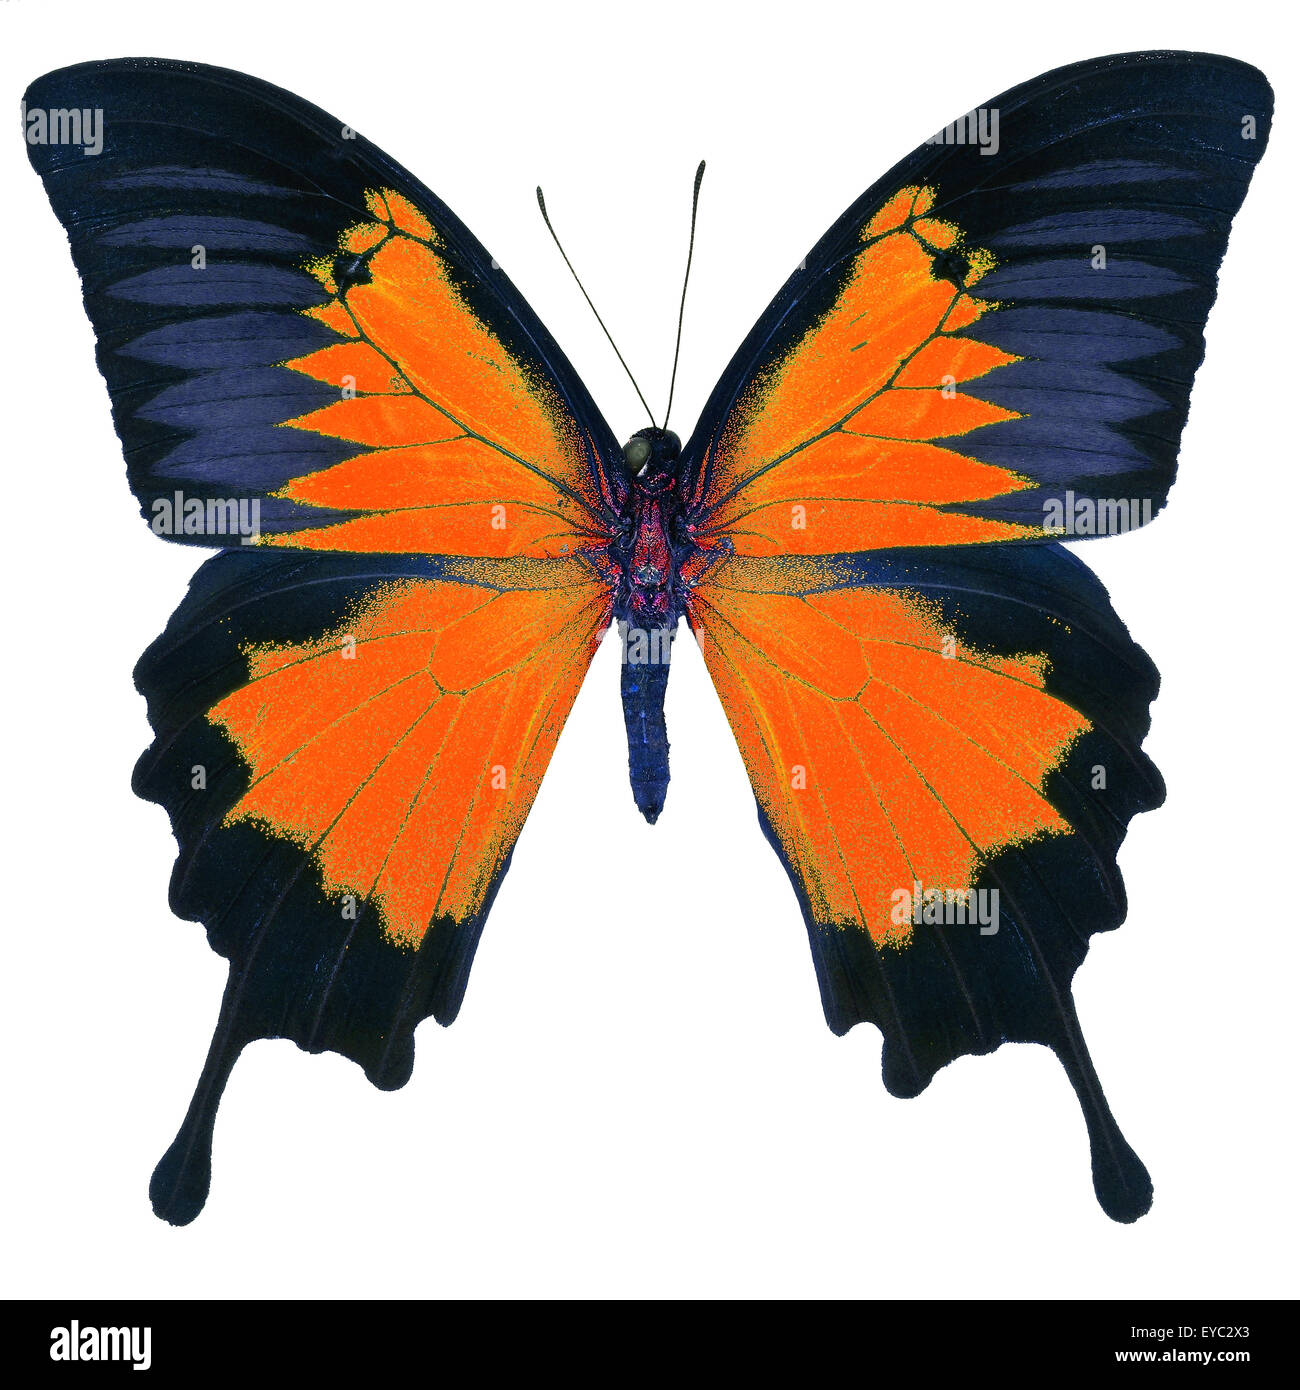 Bella farfalla arancione, blu imperatore, Montagna blu (Papilio ulysses) in fantasia profilo colore, isolato su sfondo bianco Foto Stock